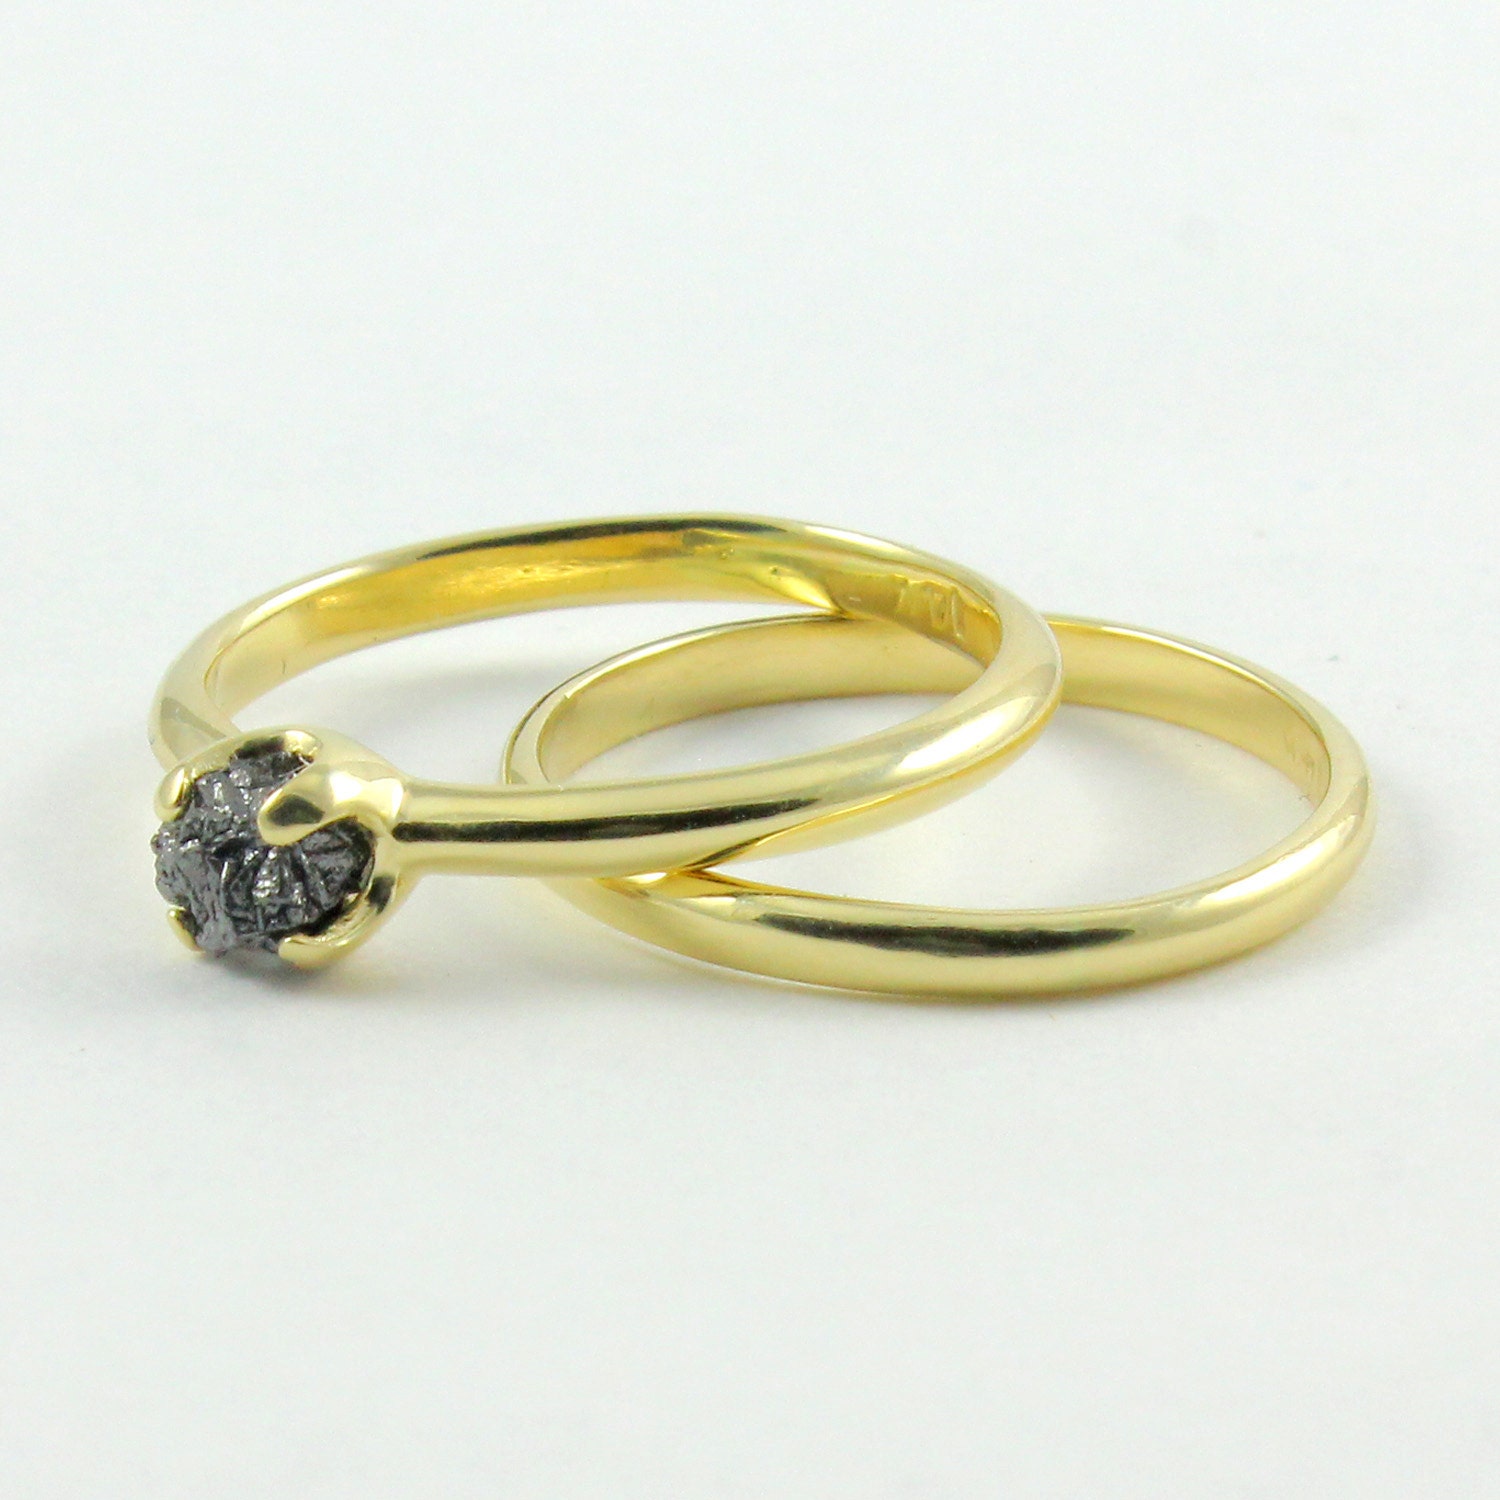 Set of Wedding Rings 14K Yellow Gold Engagement Ring